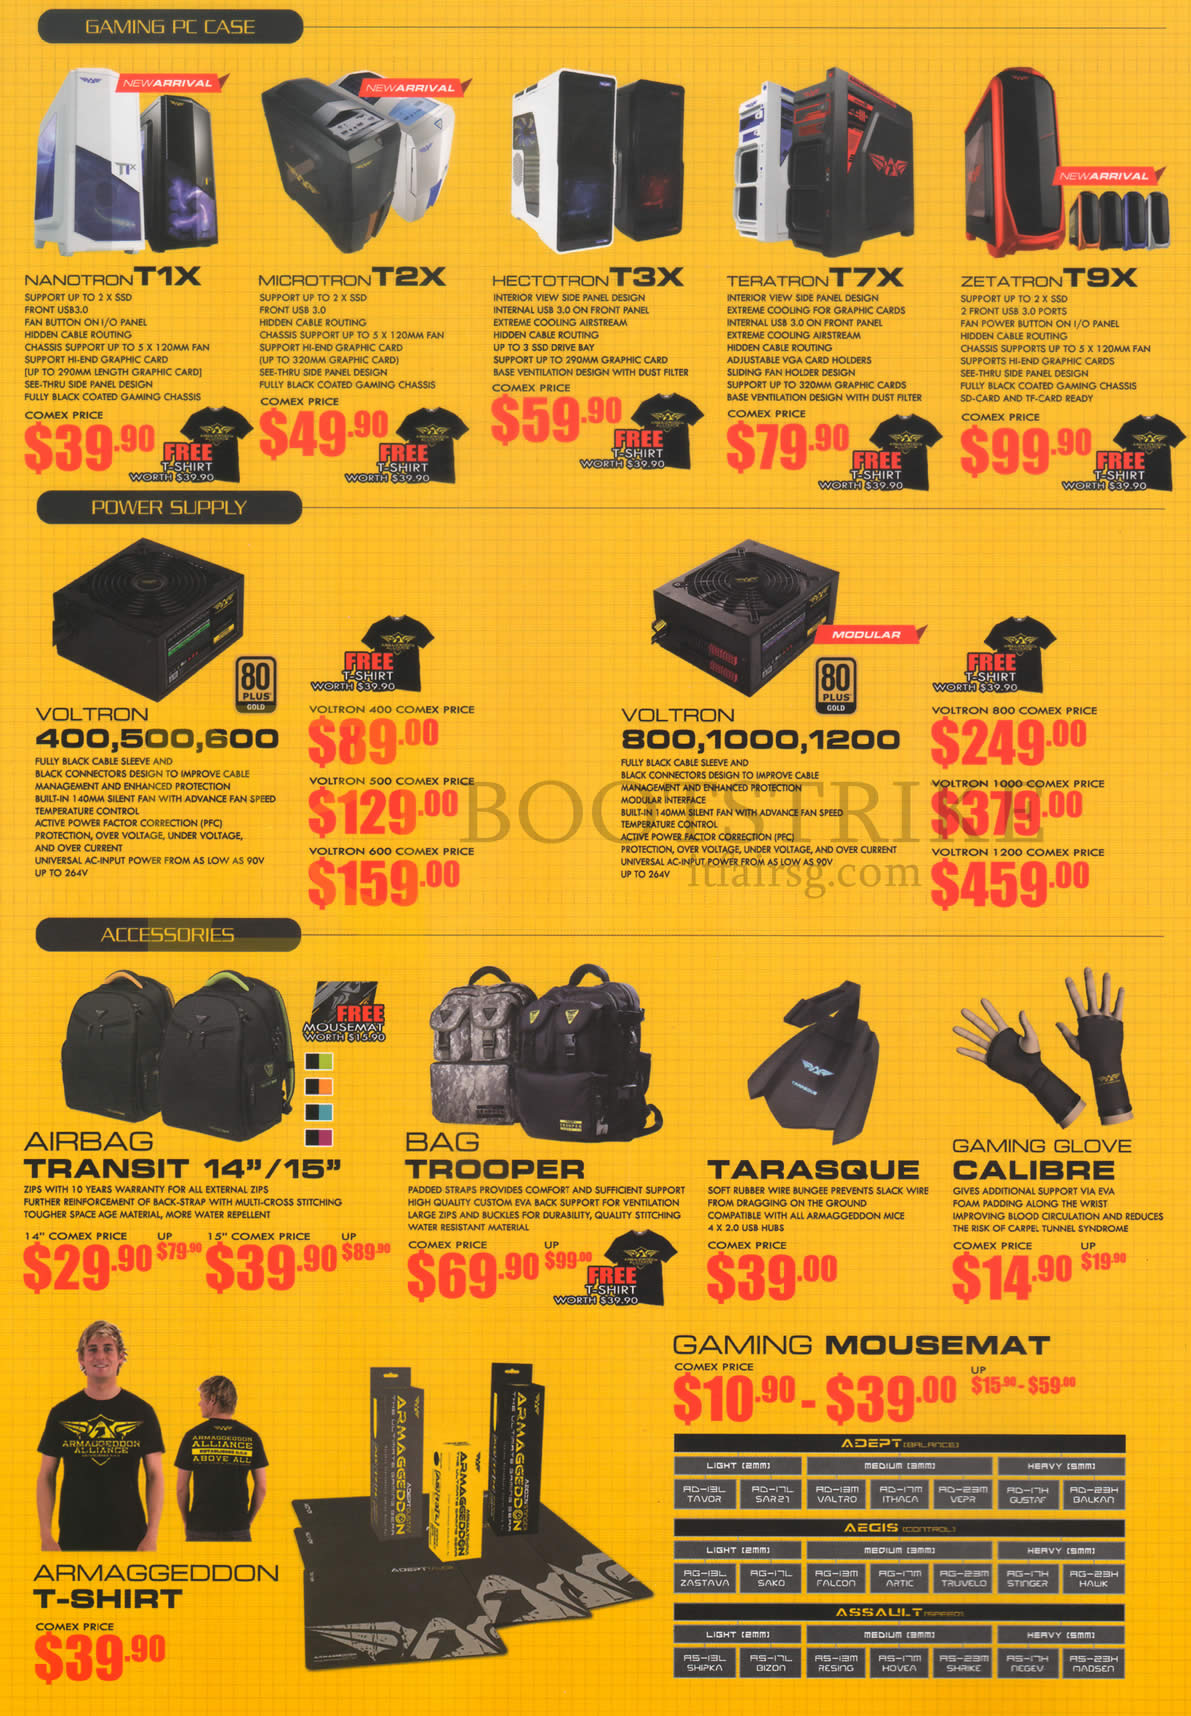 COMEX 2015 price list image brochure of Armageddon Desktop PCs, Power Supplies, Accessories, Nanotron T1X, Microtron T2X, Hectotron T3X, TeraTron T7X, ZetaTron T9X, Voltron 400, 500, 600, 800, 1000, 1200